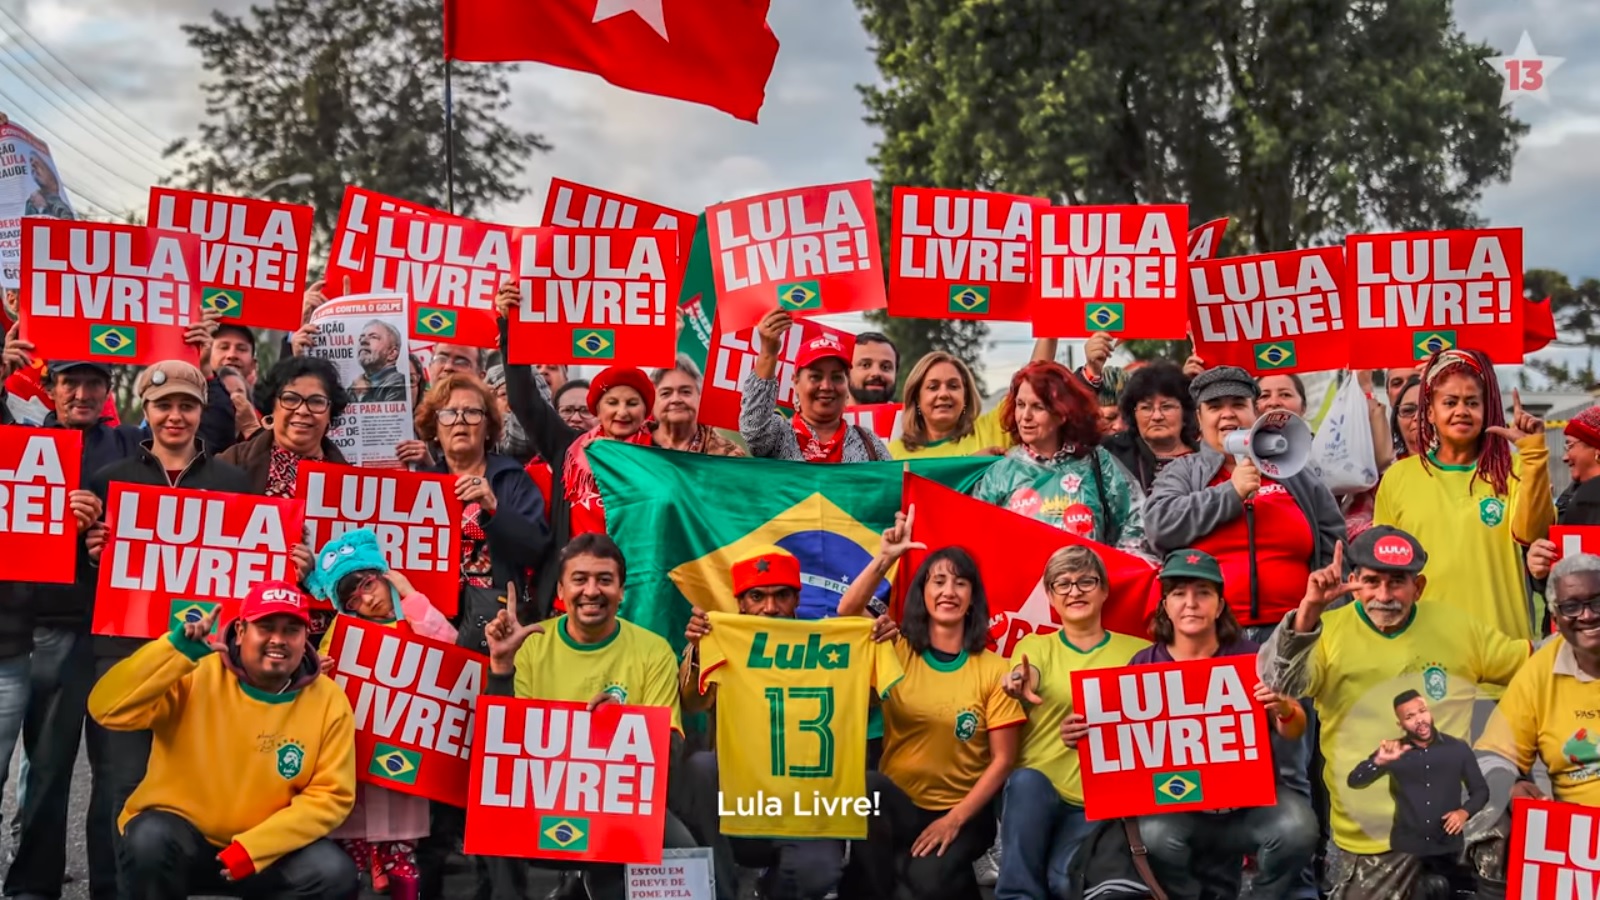 O PT a luta contra o Burocratismo Jurídico Burguês: crise política e conjuntura eleitoral no Brasil